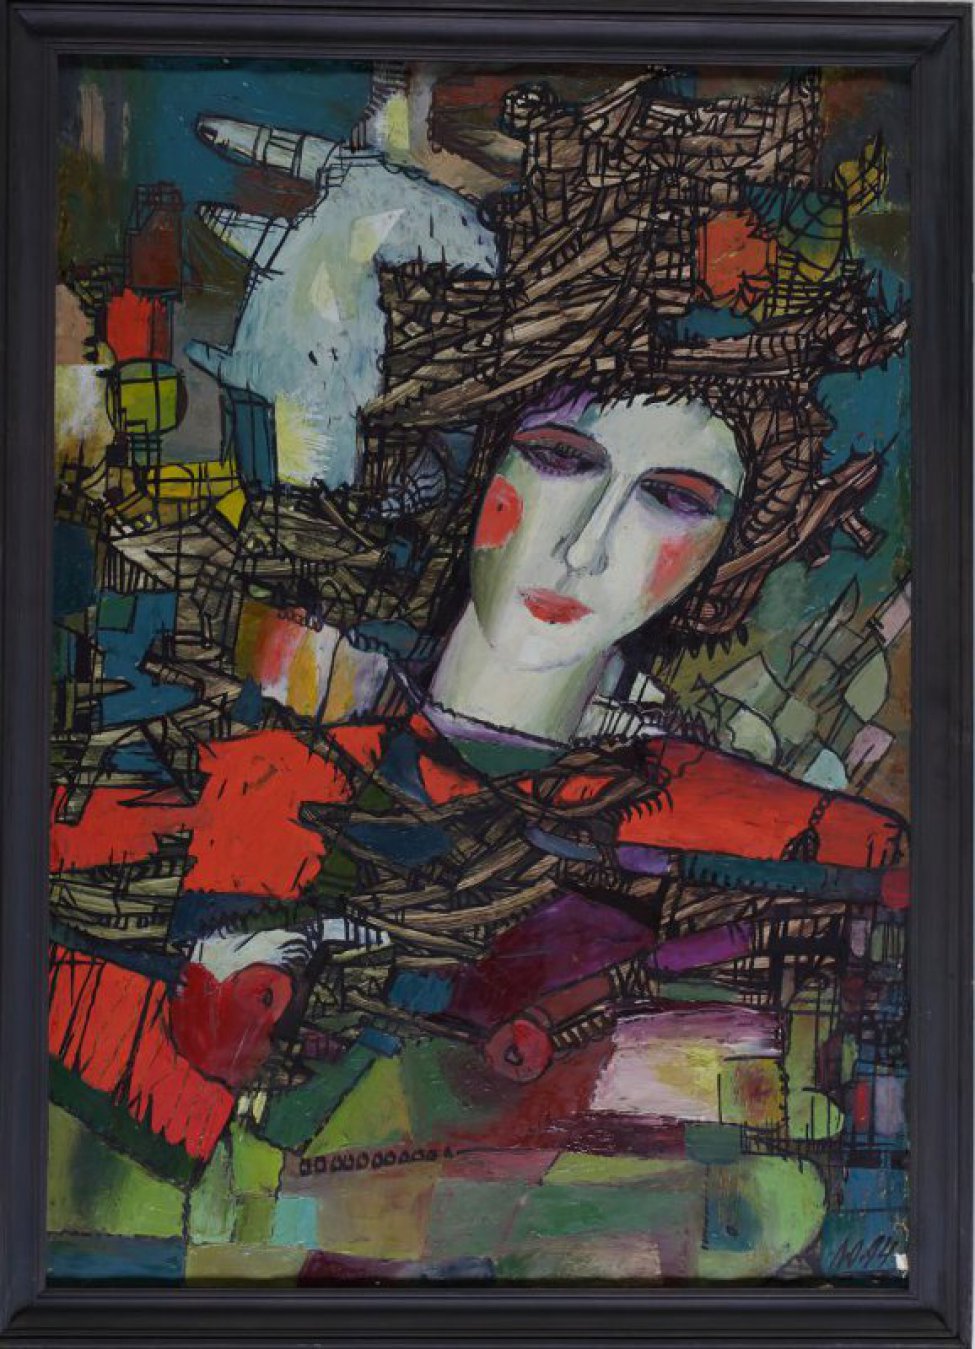 Поясное изображение молодой женщины с ярко нарумяненным лицом, в одежде из ярко-красной ткани (на плечах). Фон представляет собой сложный геометрический узор.